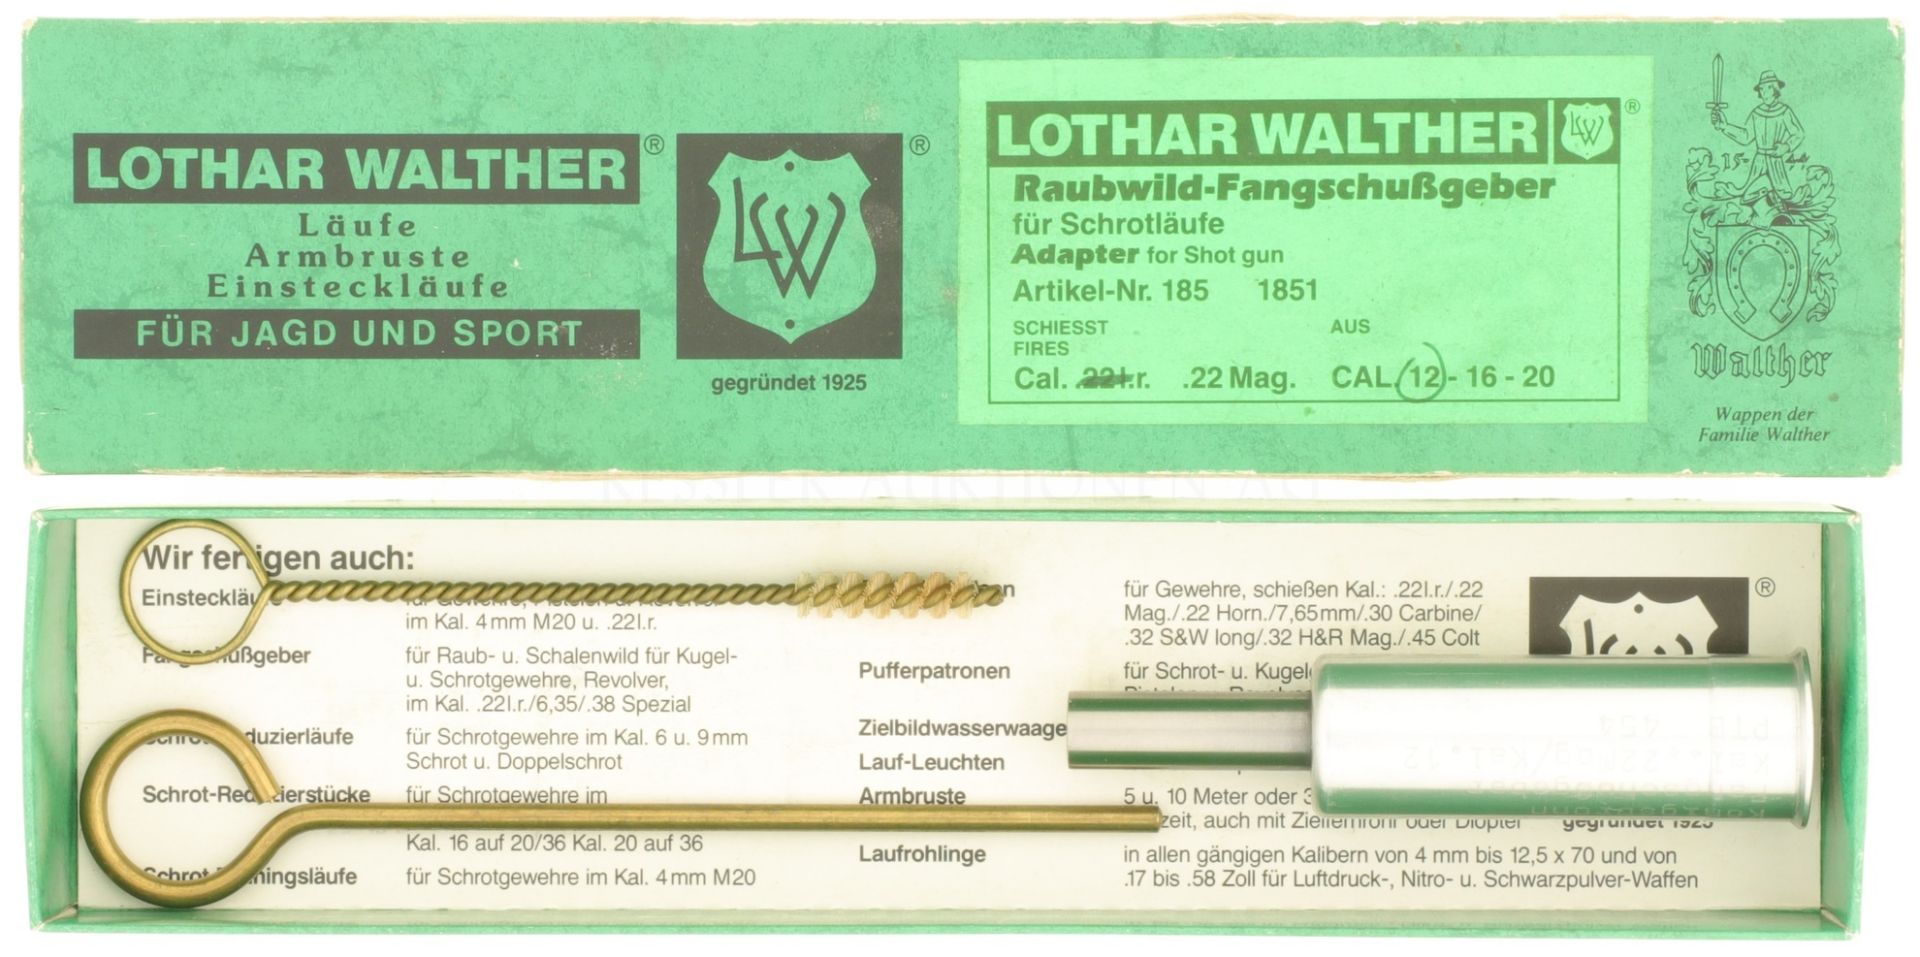 Raubwild-Fangschussgeber, Lothar Walther, Kal. .22Mag. aus Kal. 12